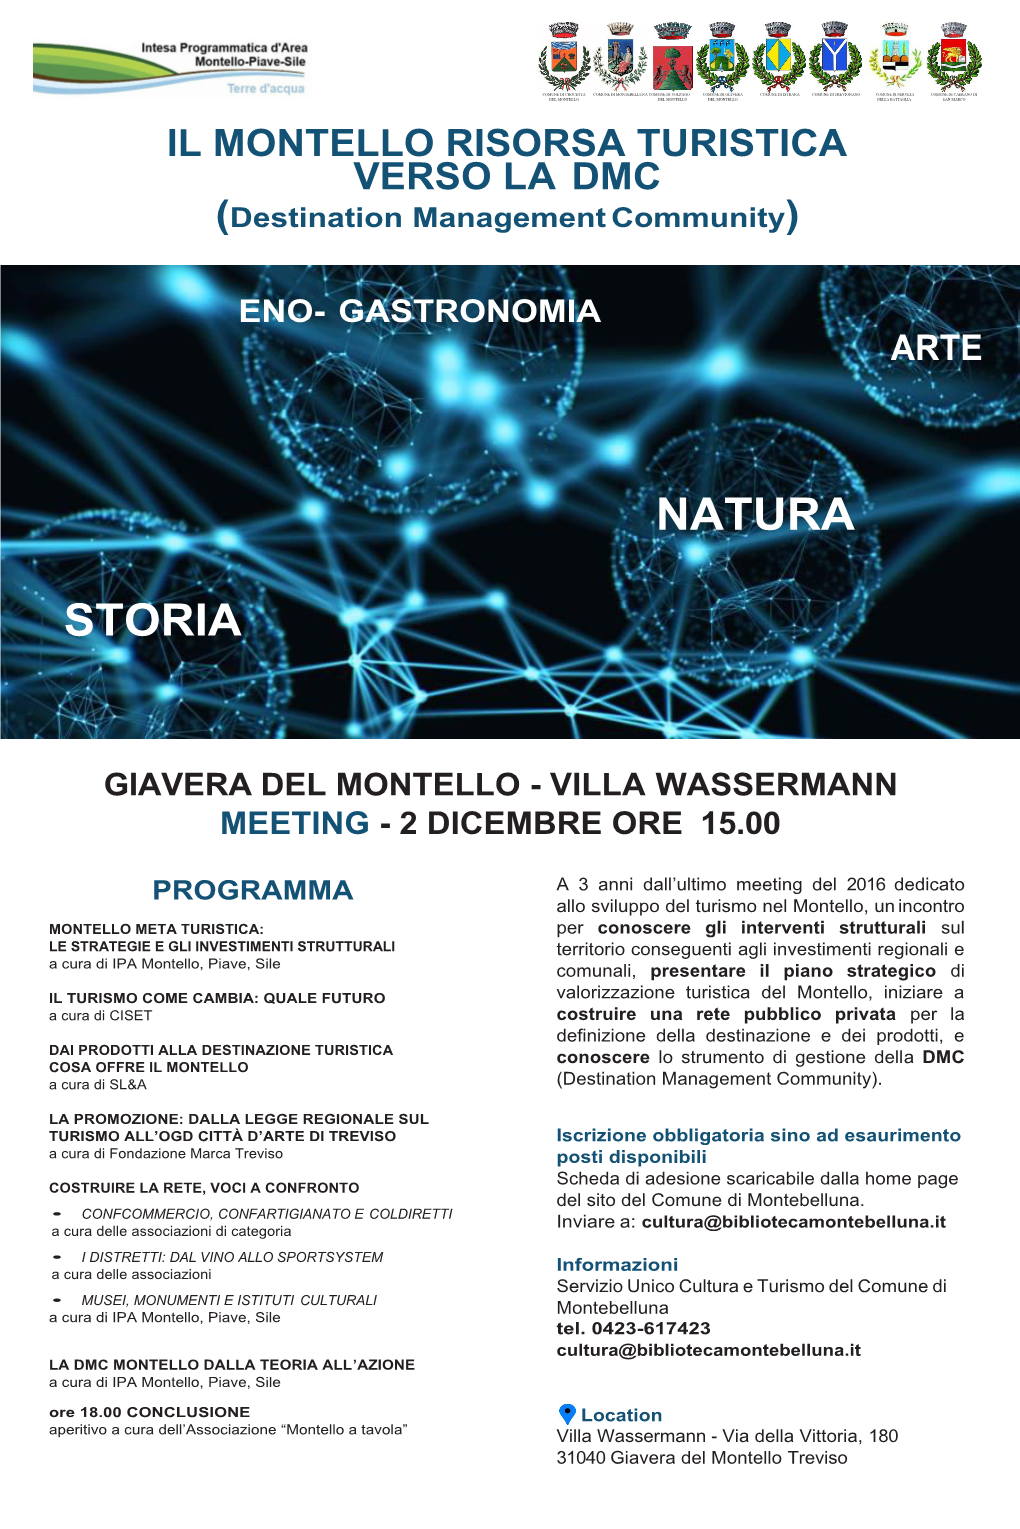 Giavera Del Montello - Villa Wassermann Meeting - 2 Dicembre Ore 15.00